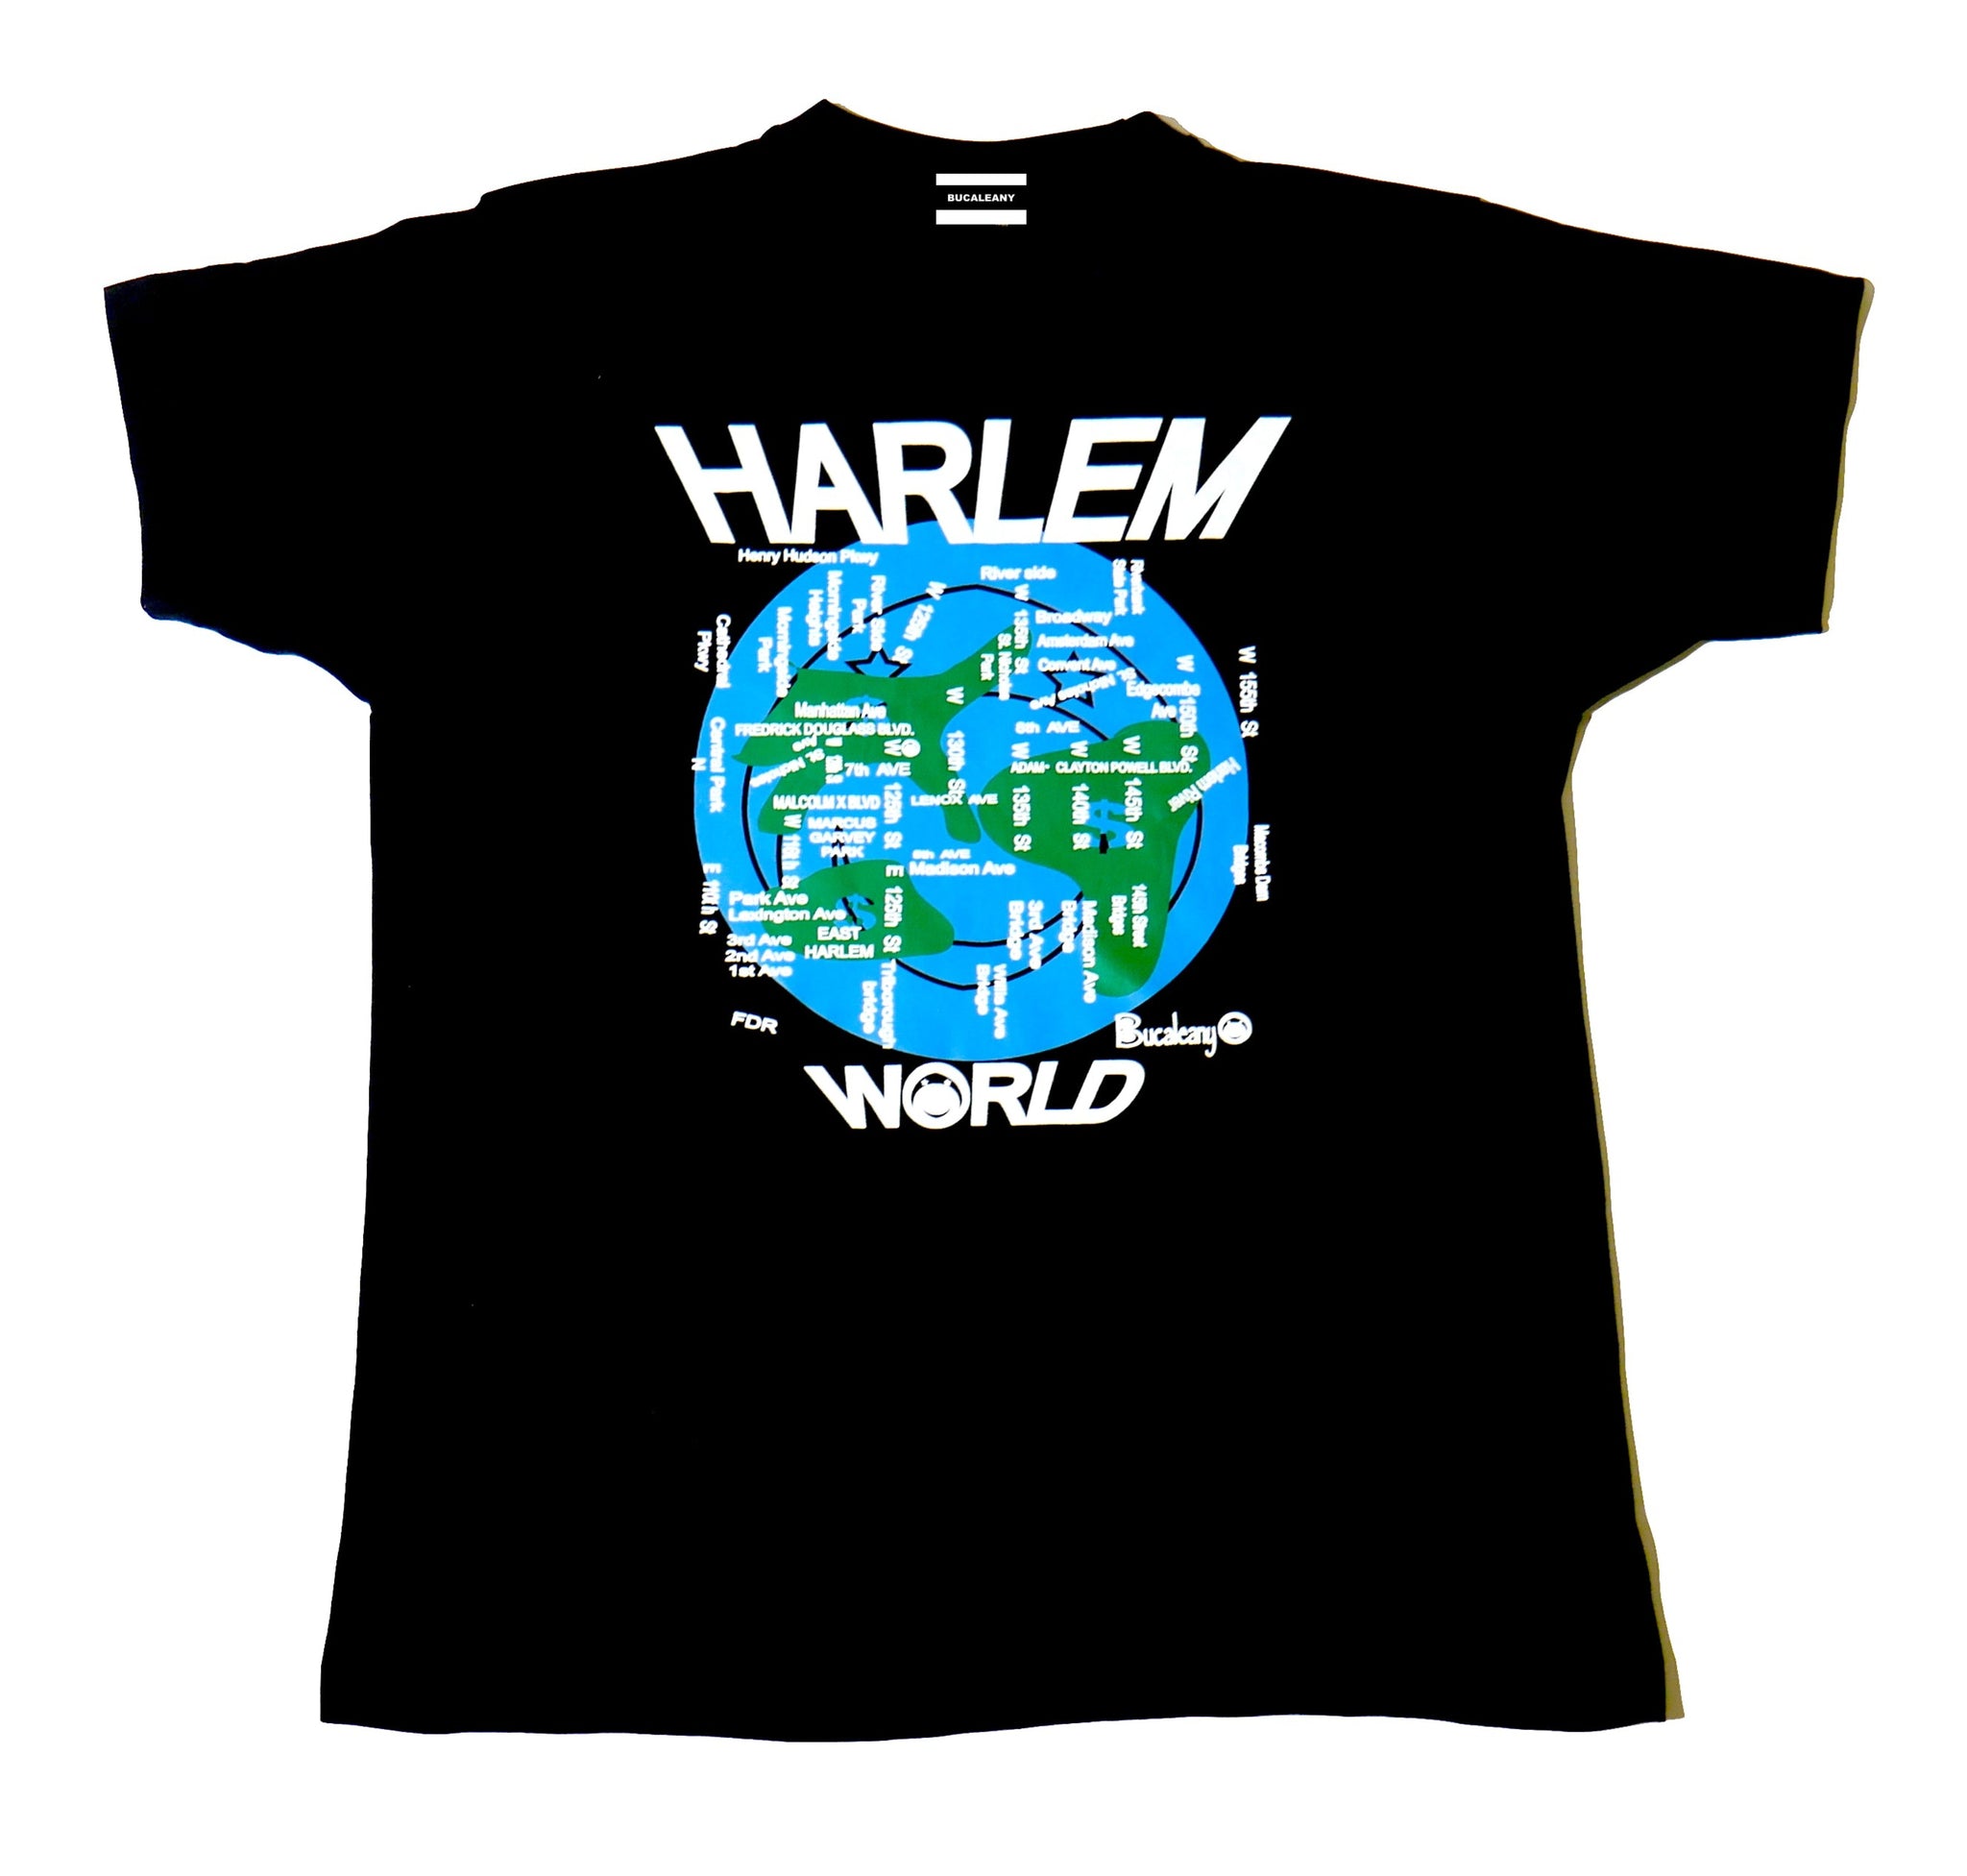 Harlem World - BUCALEANY